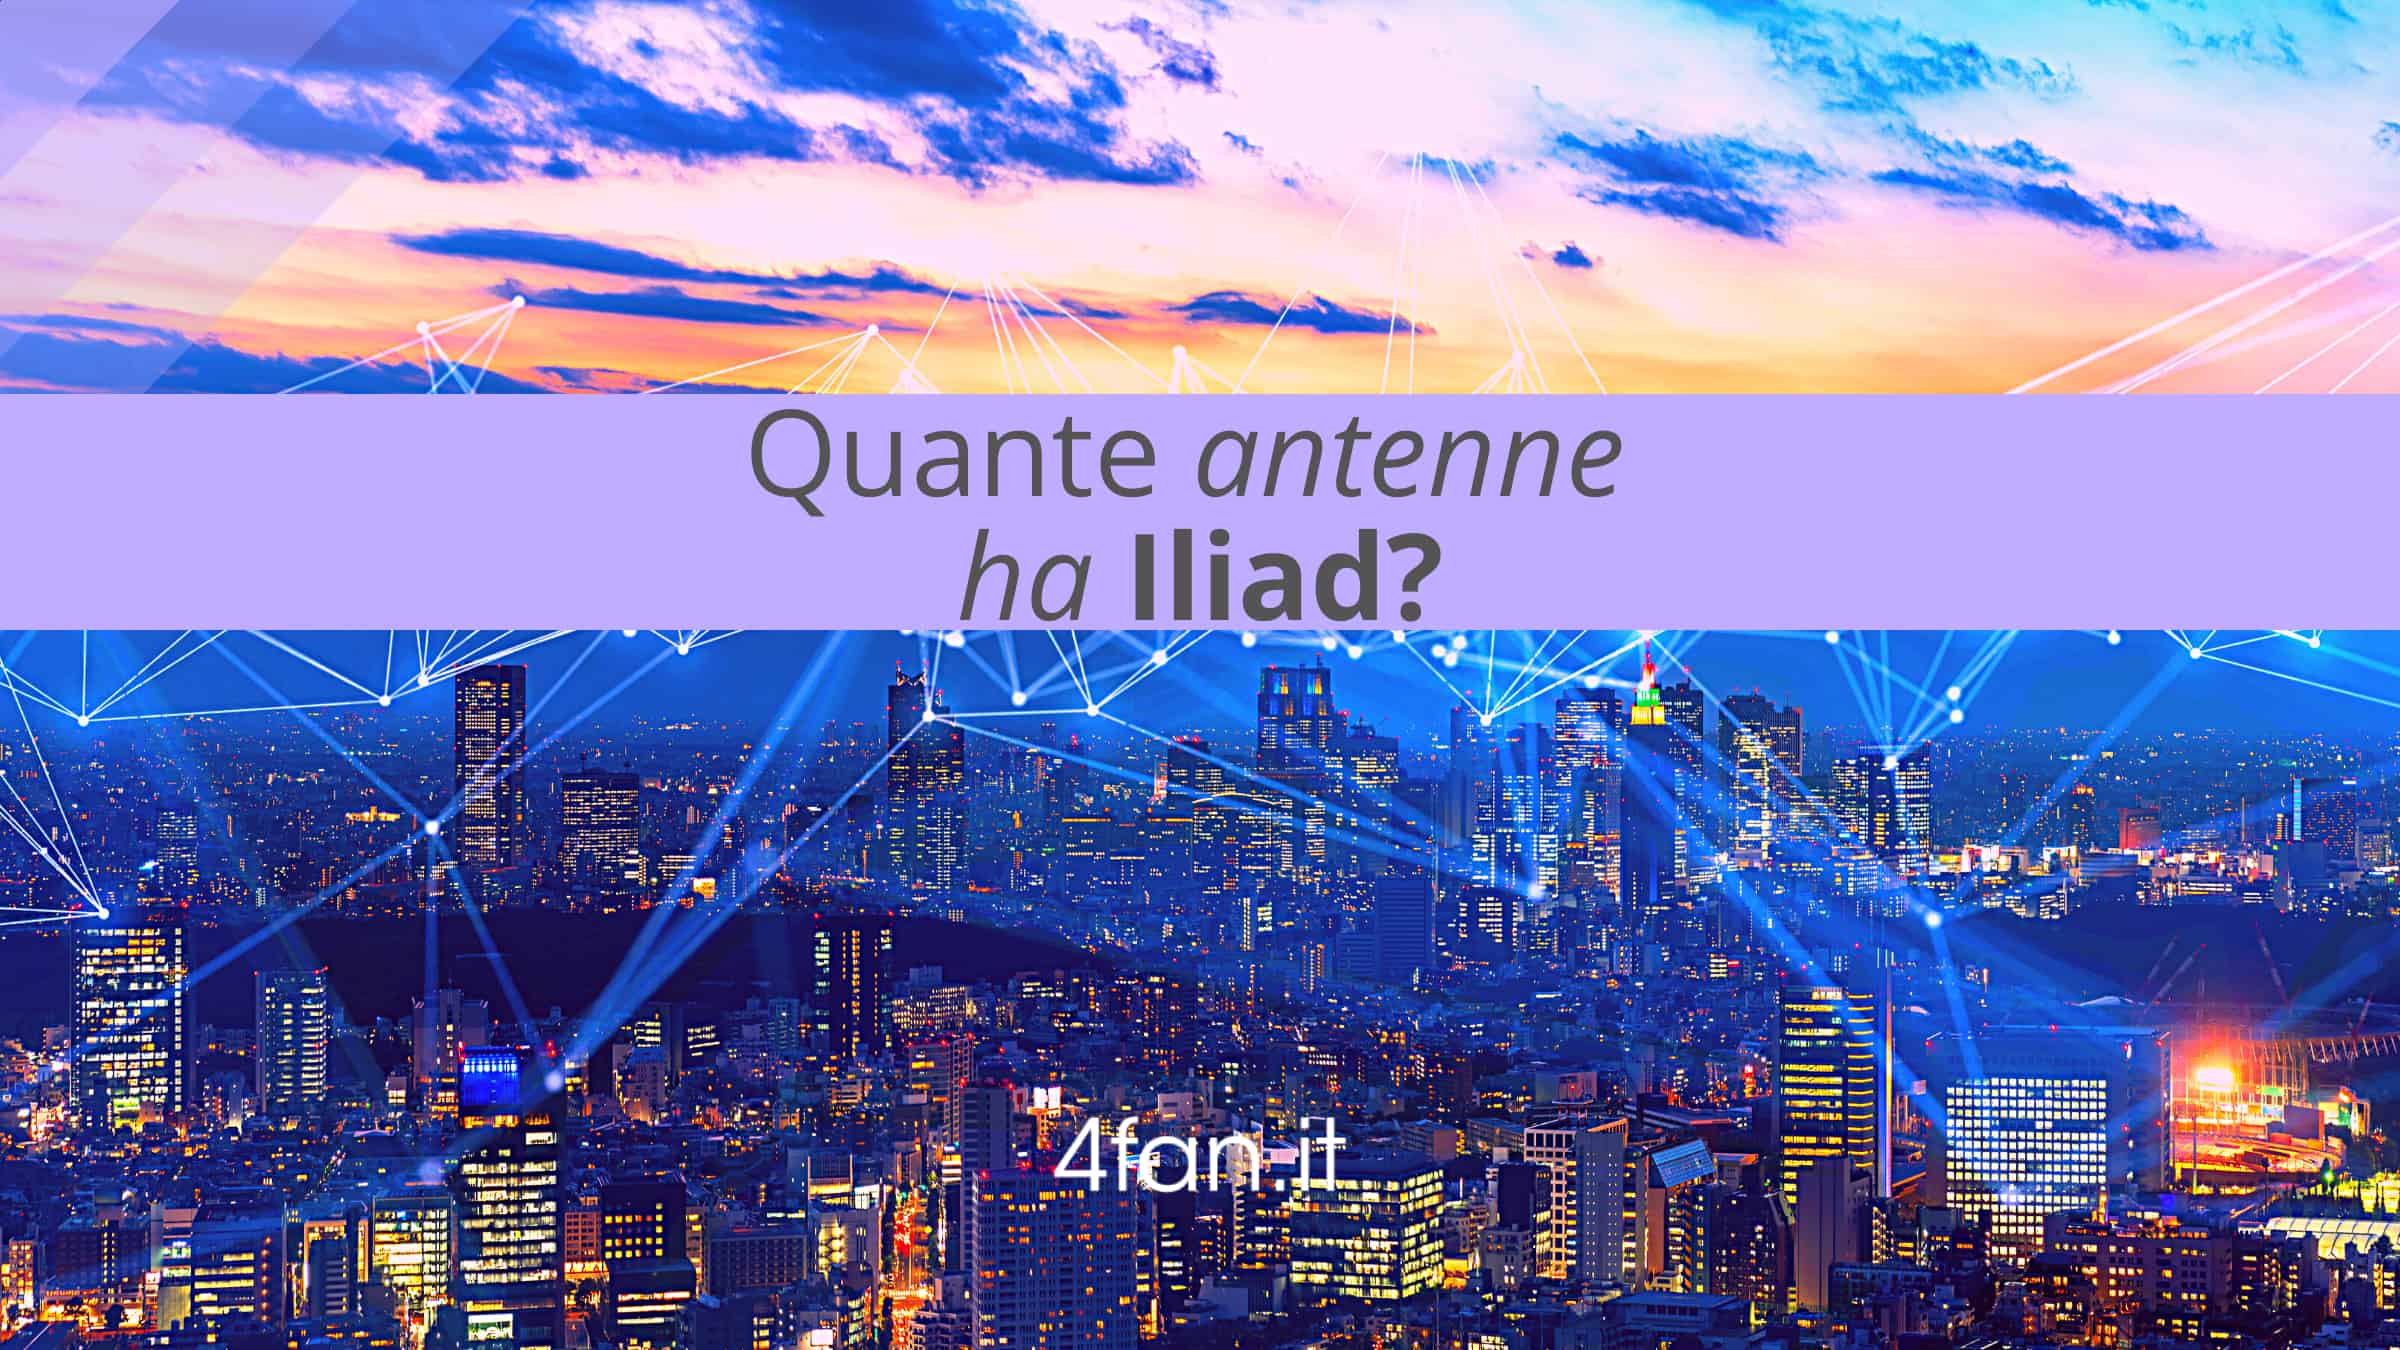 Quante antenne ha Iliad?